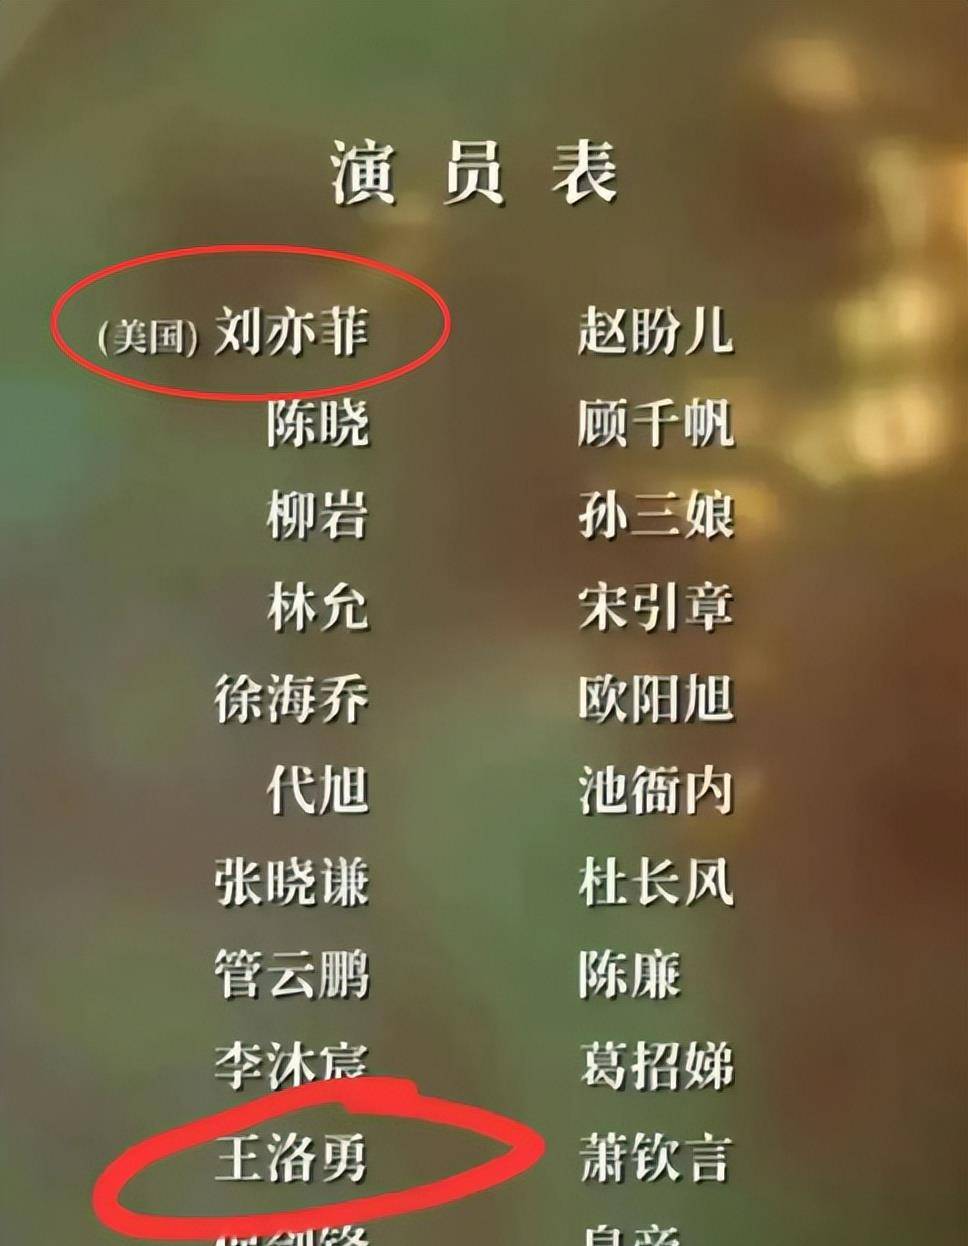 在电视剧结尾的演员表上,刘亦菲的国籍是美国,而王洛勇则是中国国籍